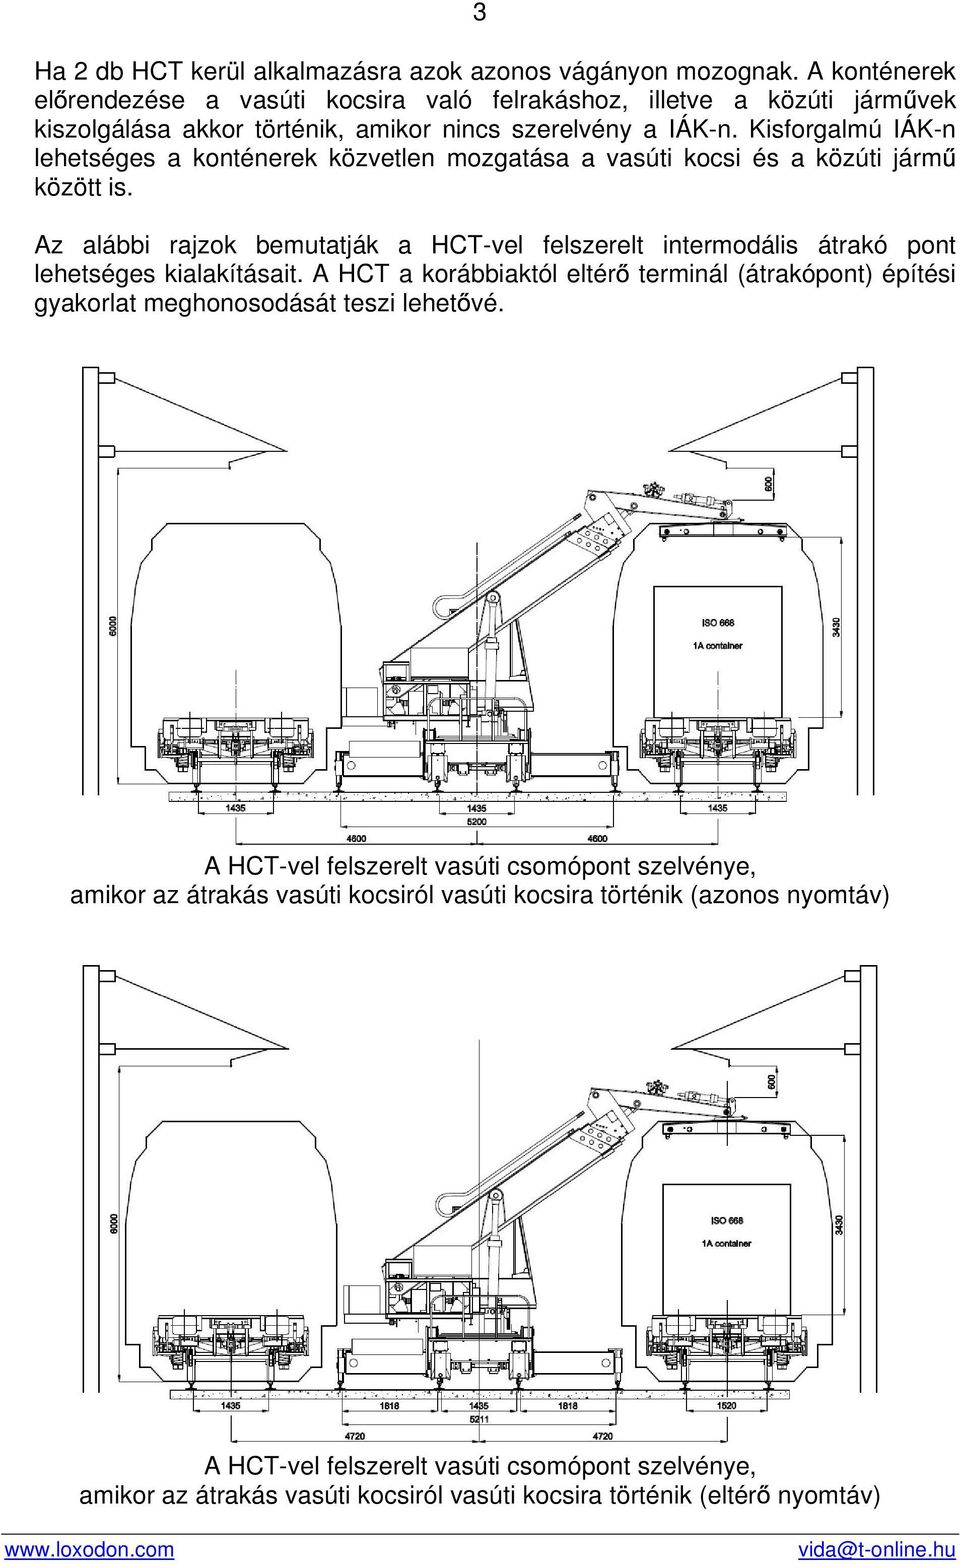 Kisforgalmú IÁK-n lehetséges a konténerek közvetlen mozgatása a vasúti kocsi és a közúti járm között is.